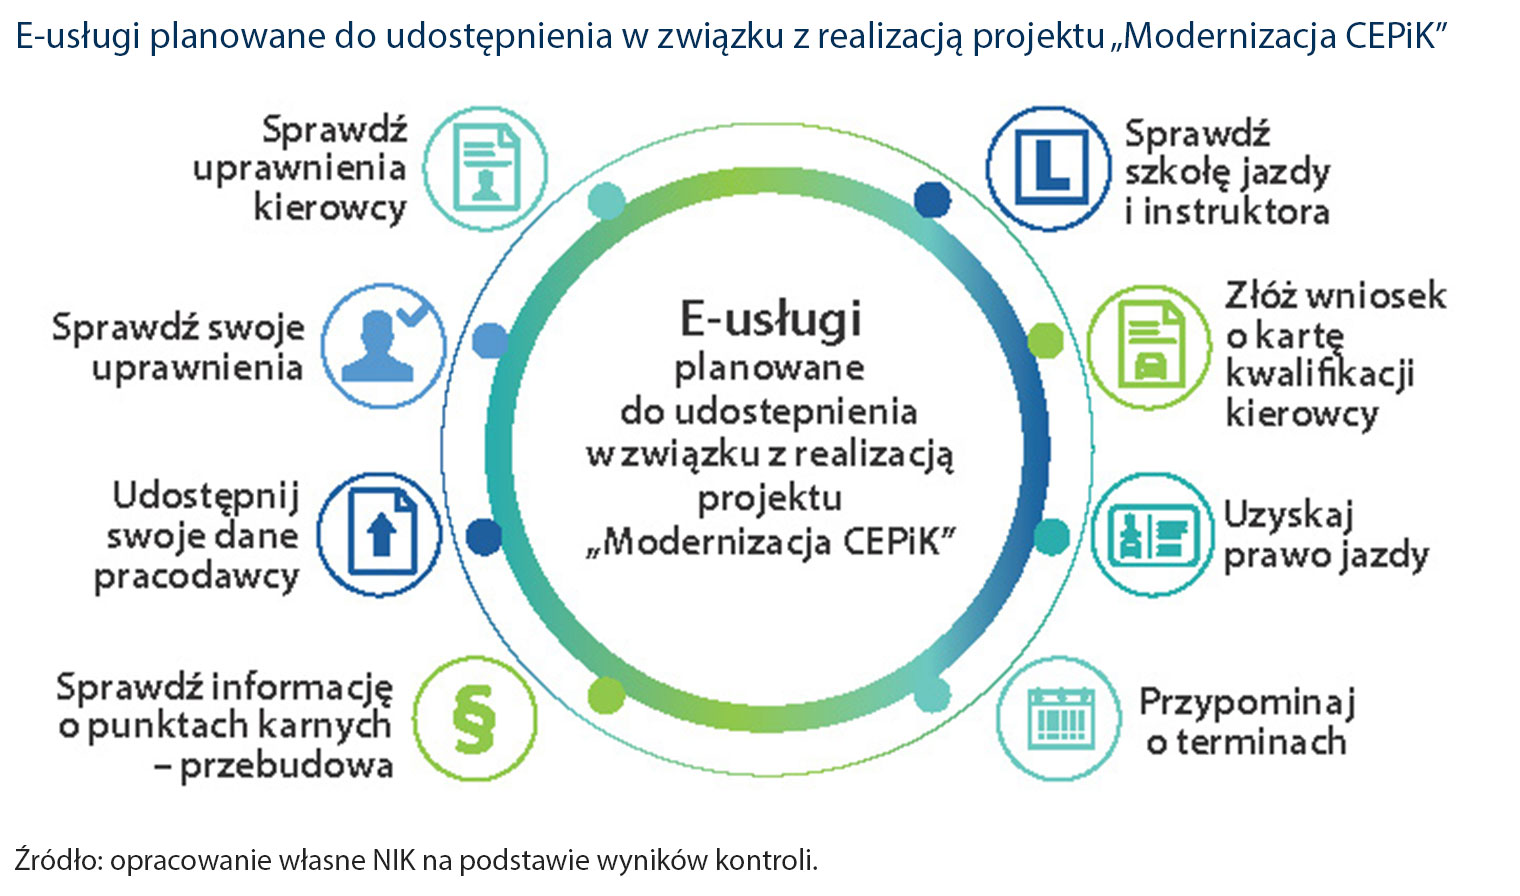 E-usługi planowane do udostępnienia w związku z realizacją projektu „Modernizacja CEPiK” (opis obrazka poniżej)